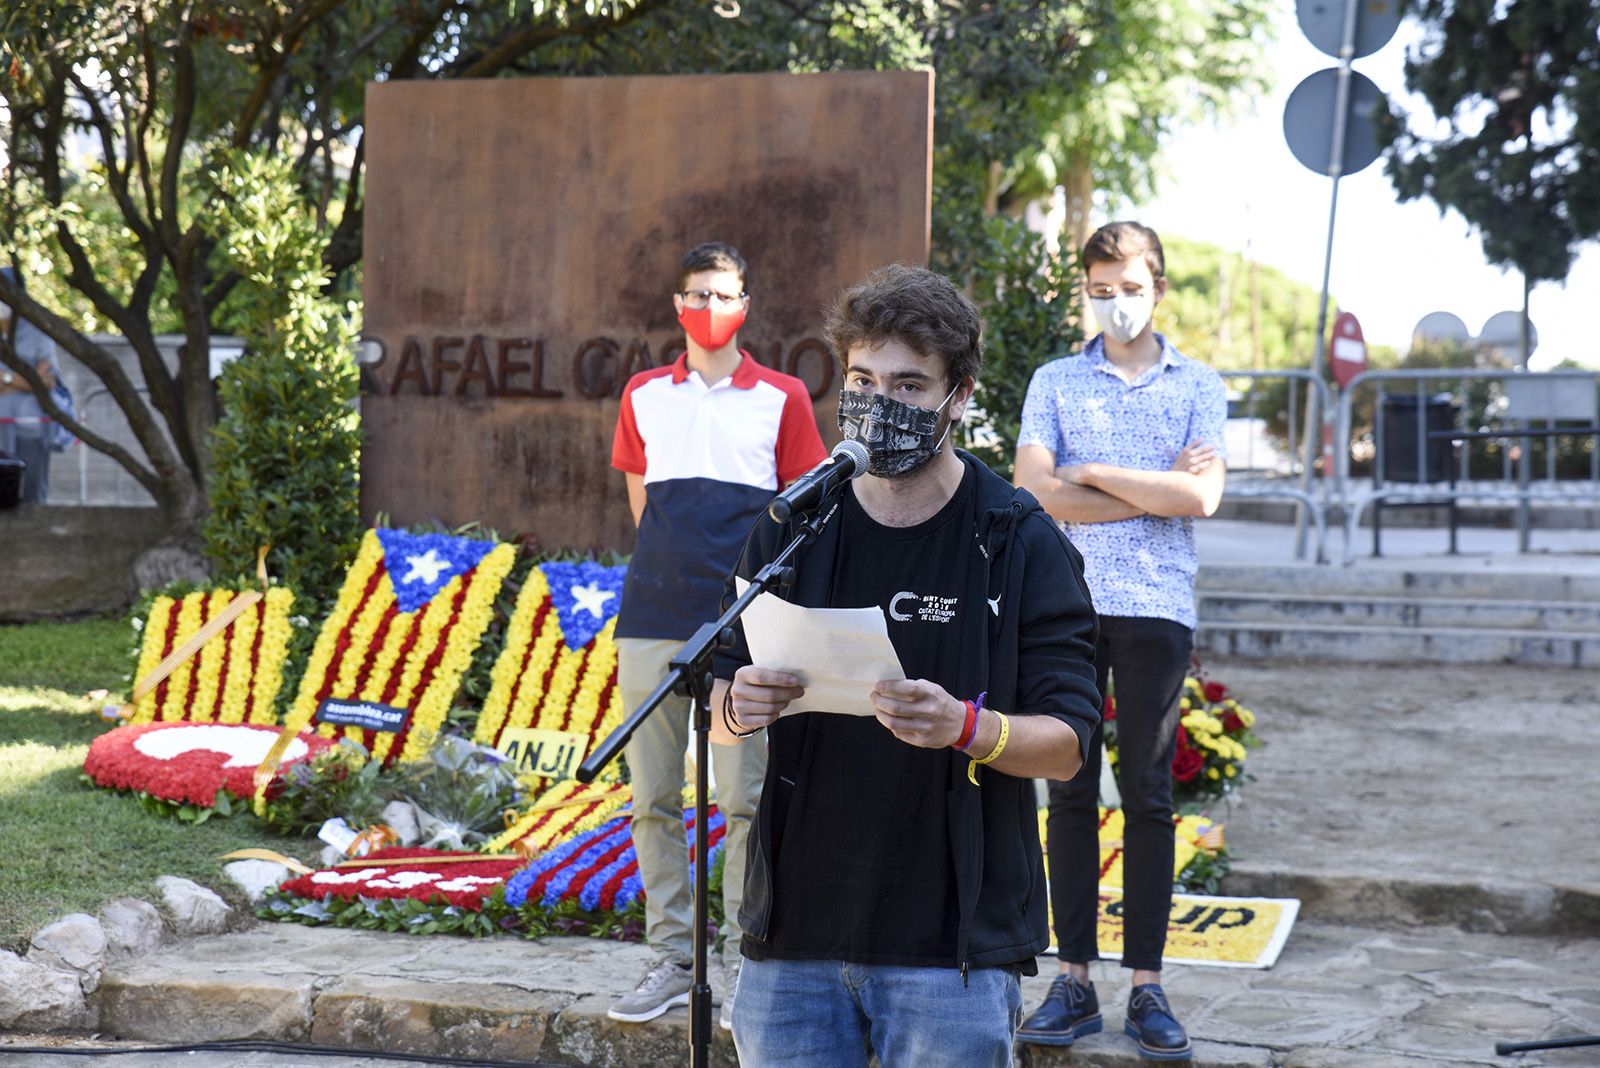 Ofrena floral de les Joventuts Socialistes al monument de Rafael Casanova. Foto: Bernat Millet.